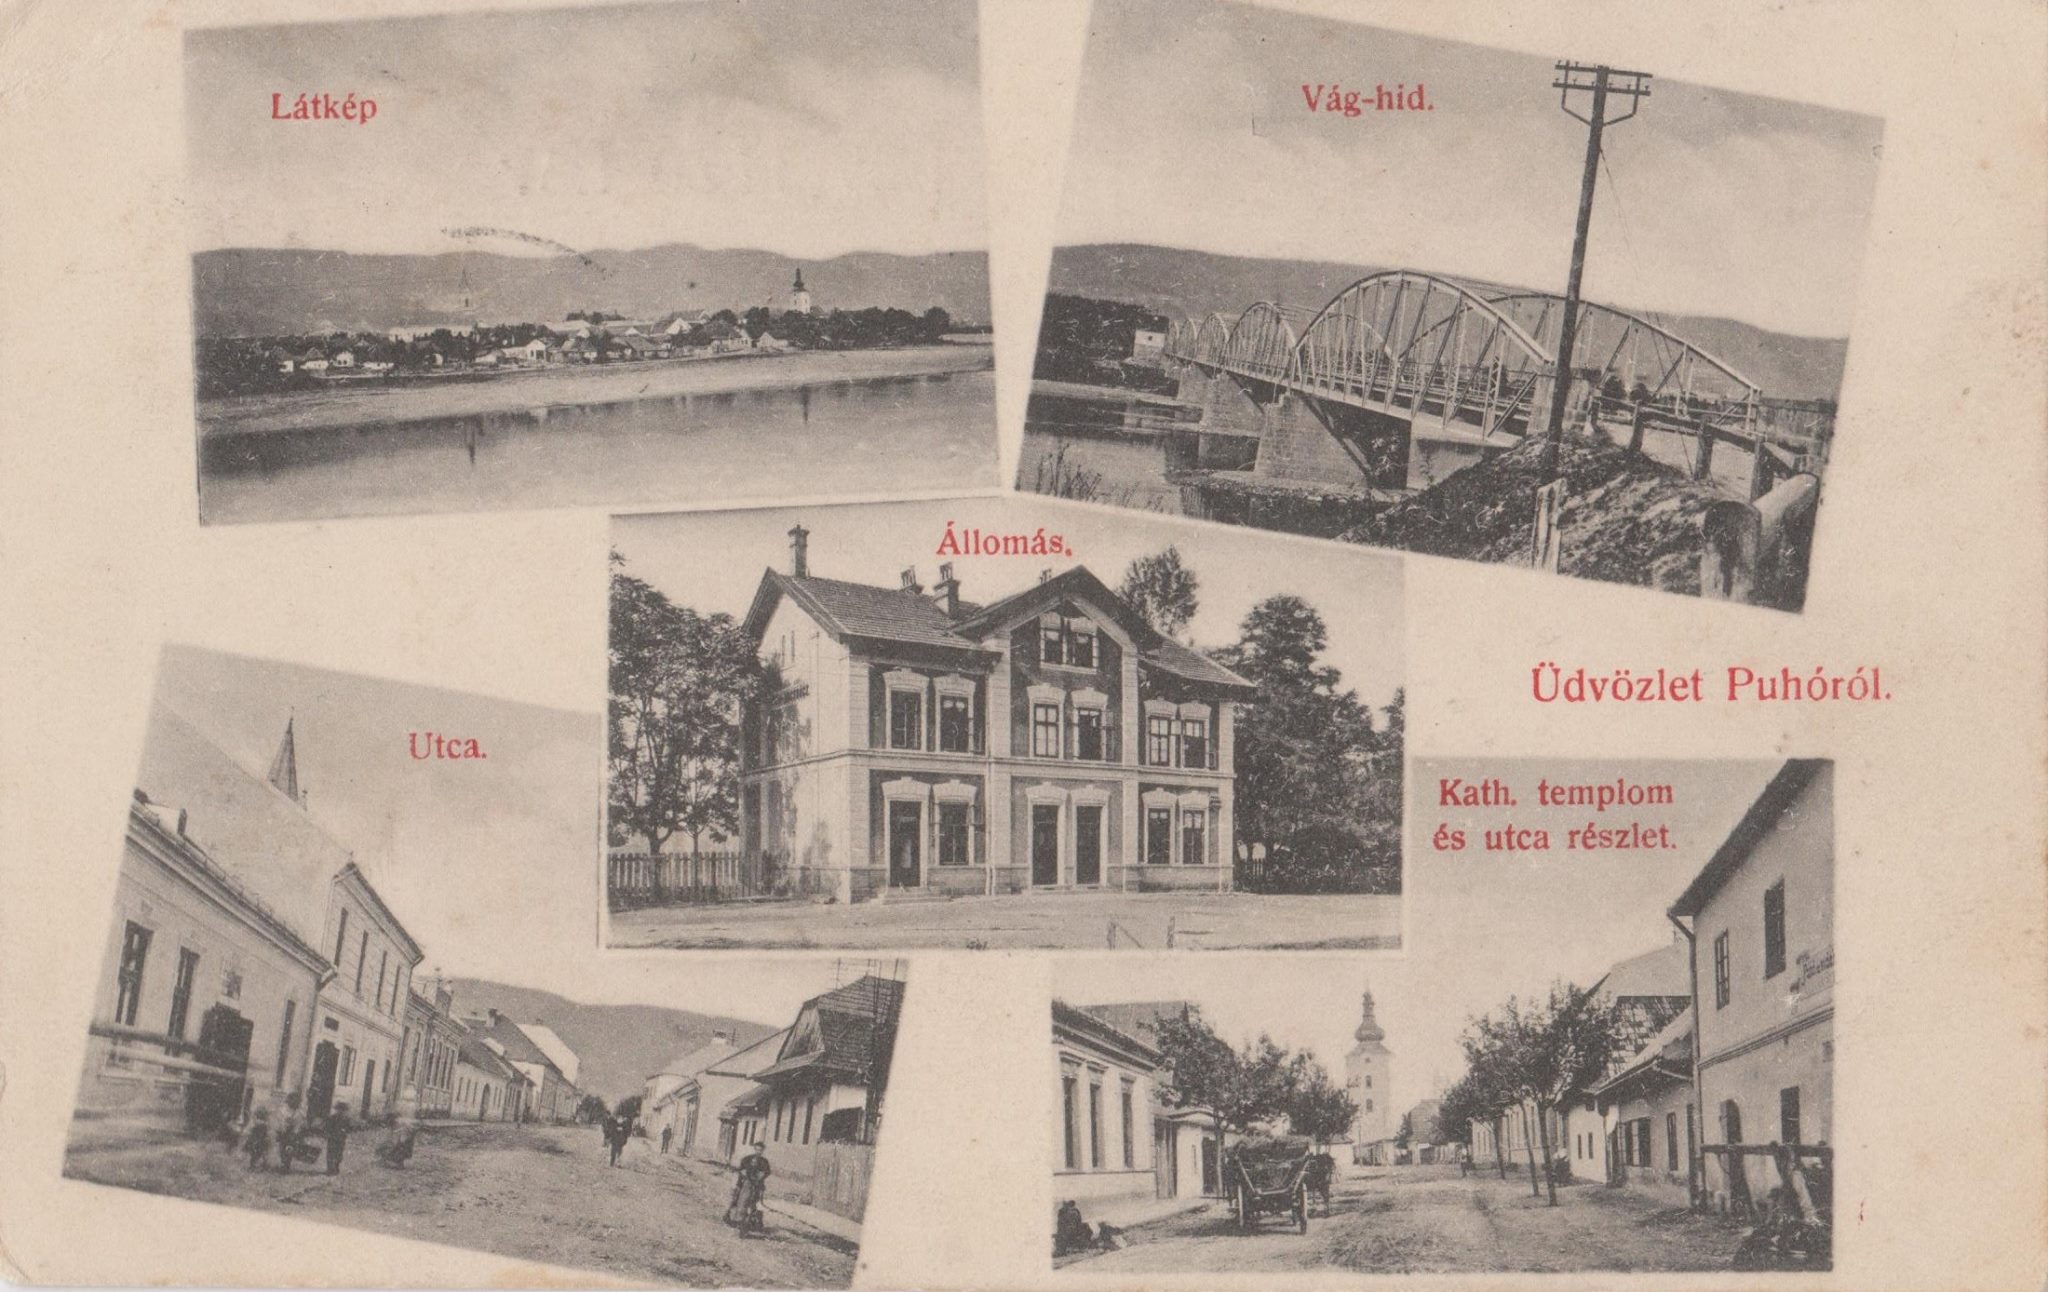 Posielame pohľadnicu z Púchova zo začiatku 20. storočia. Vtedajší Púchov reprezentoval vo svete panoramatický pohľad na mesto, pomerne nový a architektonicky zaujímavý most cez Váh z r. 1891, pôvodná budova železničnej stanice z r. 1883, a 2 najslávnejšie ulice v meste: vľavo Moravská a vpravo Námestie. Táto pohľadnica bola poslaná 1. júna 1910 Maďarskou kráľovskou poštou pani Hermíne Ostmannovej do západorakúskeho mesta Dornbirn.